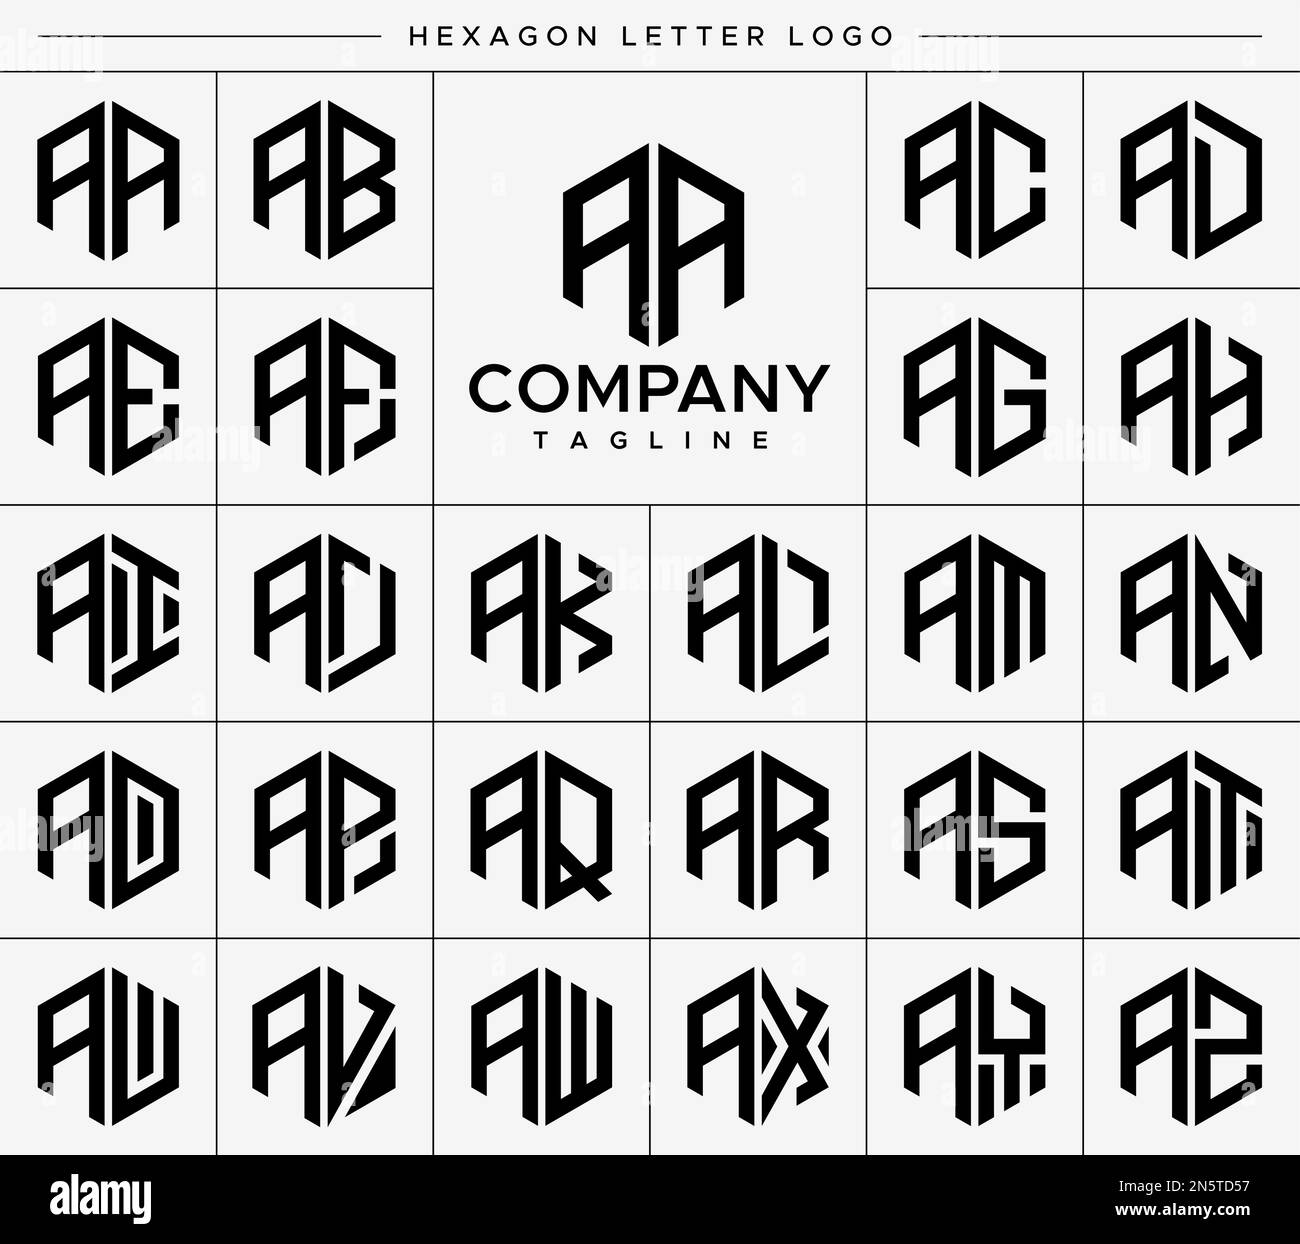 Modern hexagon A letter logo design vector set. Hexagonal AA A logo graphic. Stock Vector